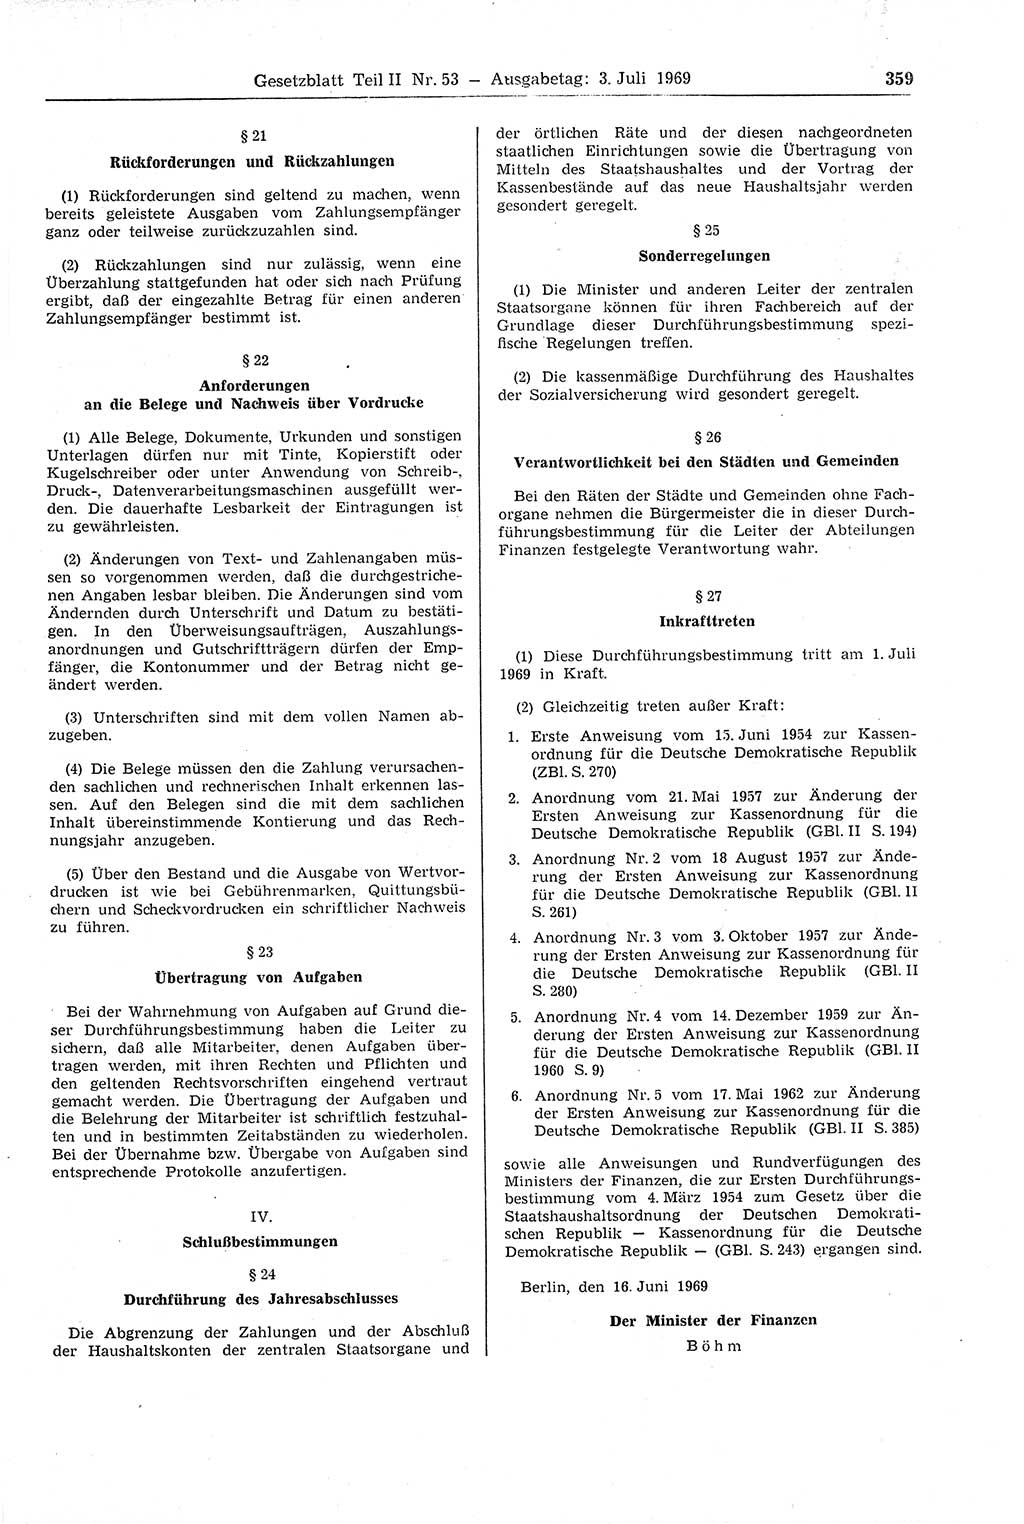 Gesetzblatt (GBl.) der Deutschen Demokratischen Republik (DDR) Teil ⅠⅠ 1969, Seite 359 (GBl. DDR ⅠⅠ 1969, S. 359)